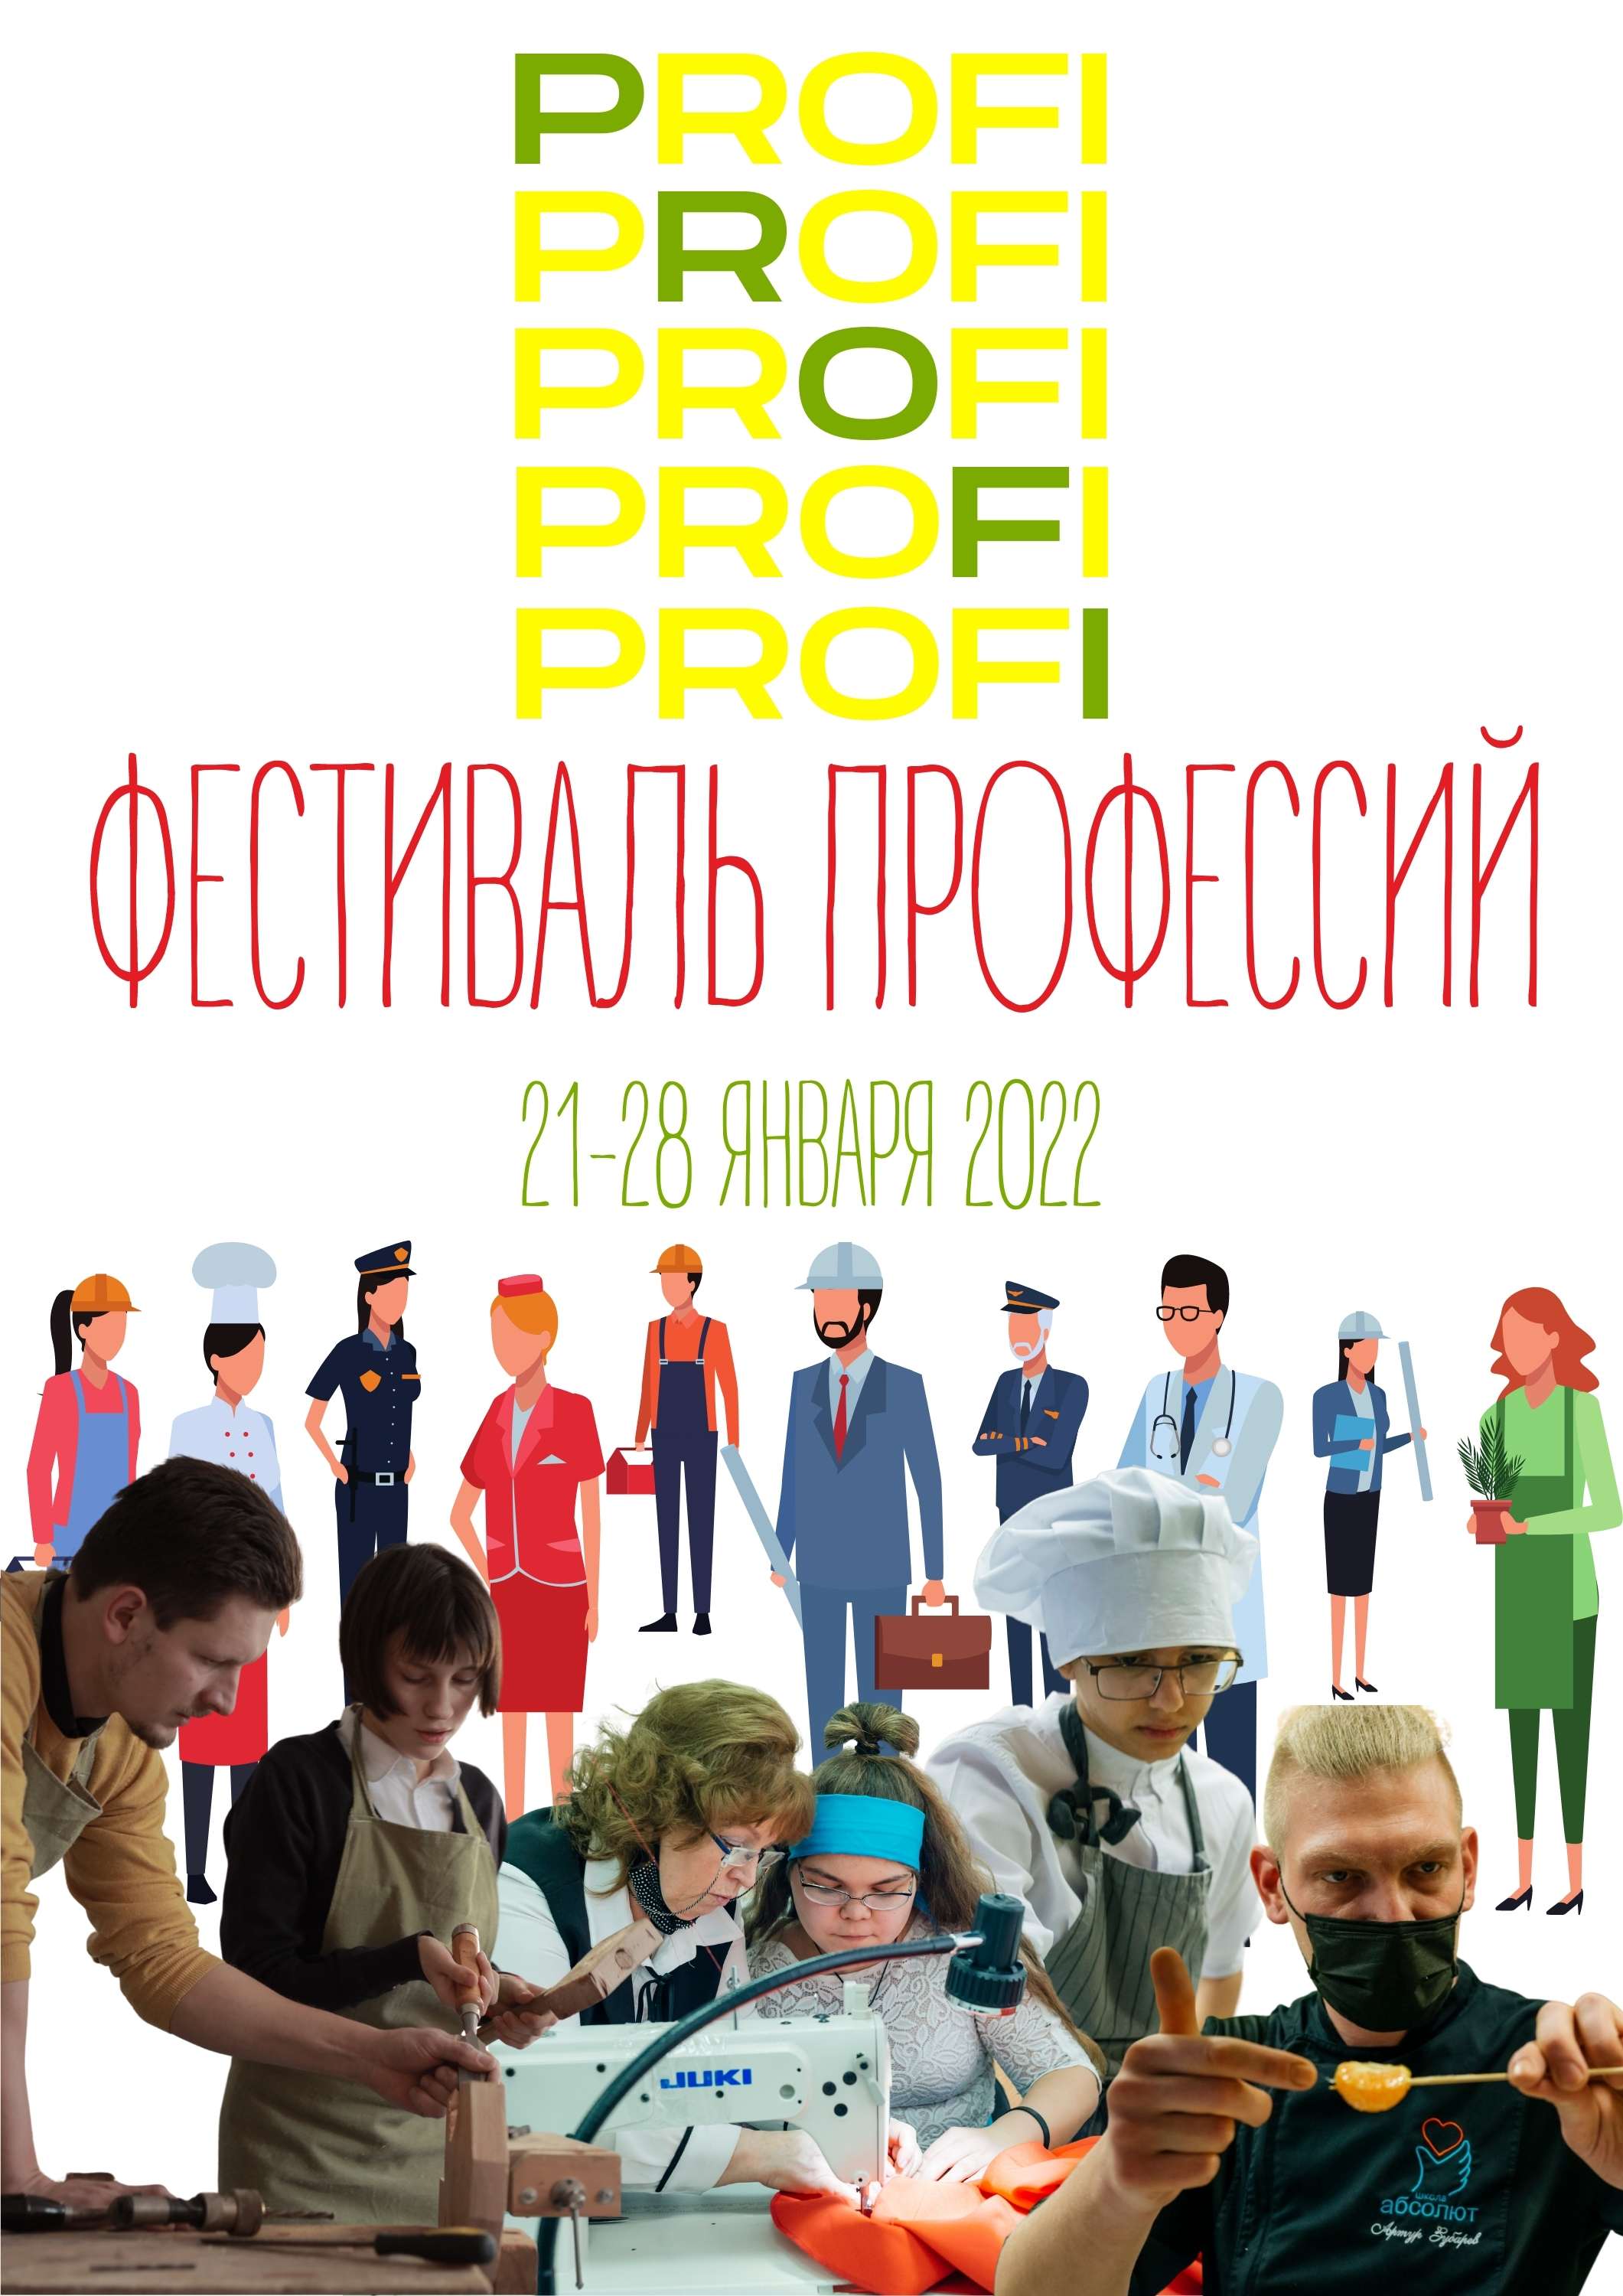 Фестиваль профессий "Profi"